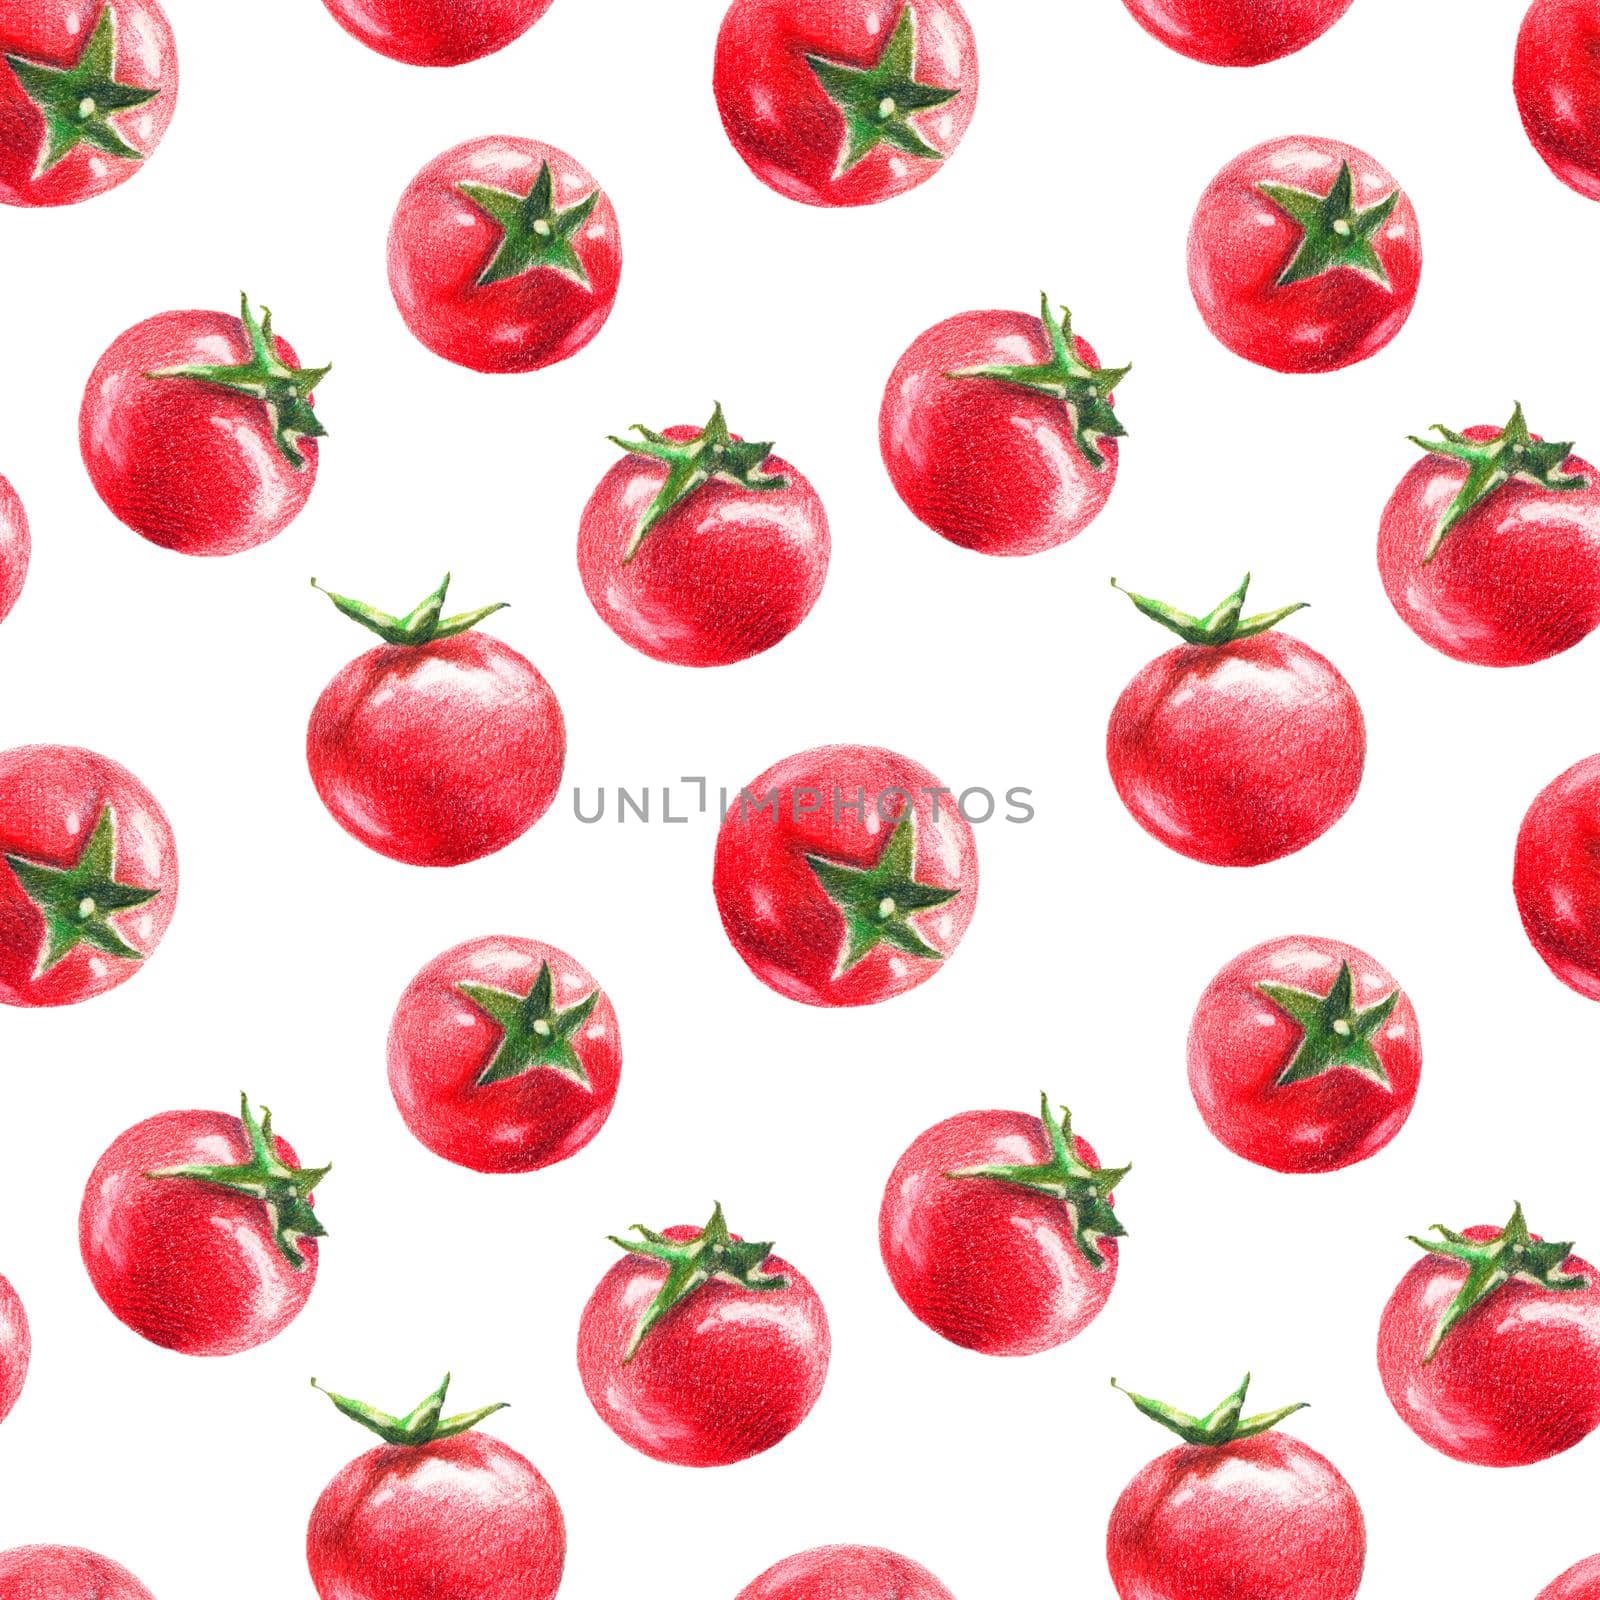 Cherry tomatoes by color pencils by Olatarakanova